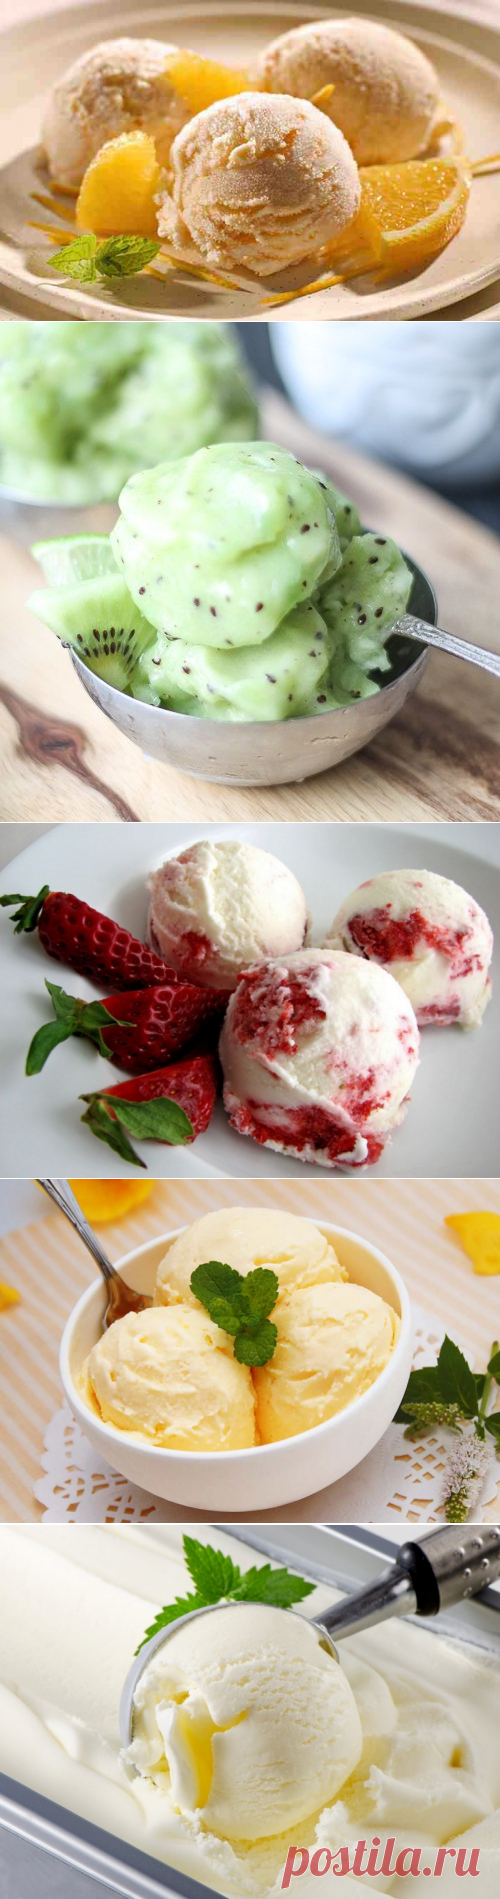 Домашнее мороженое: топ-5 простых рецептов